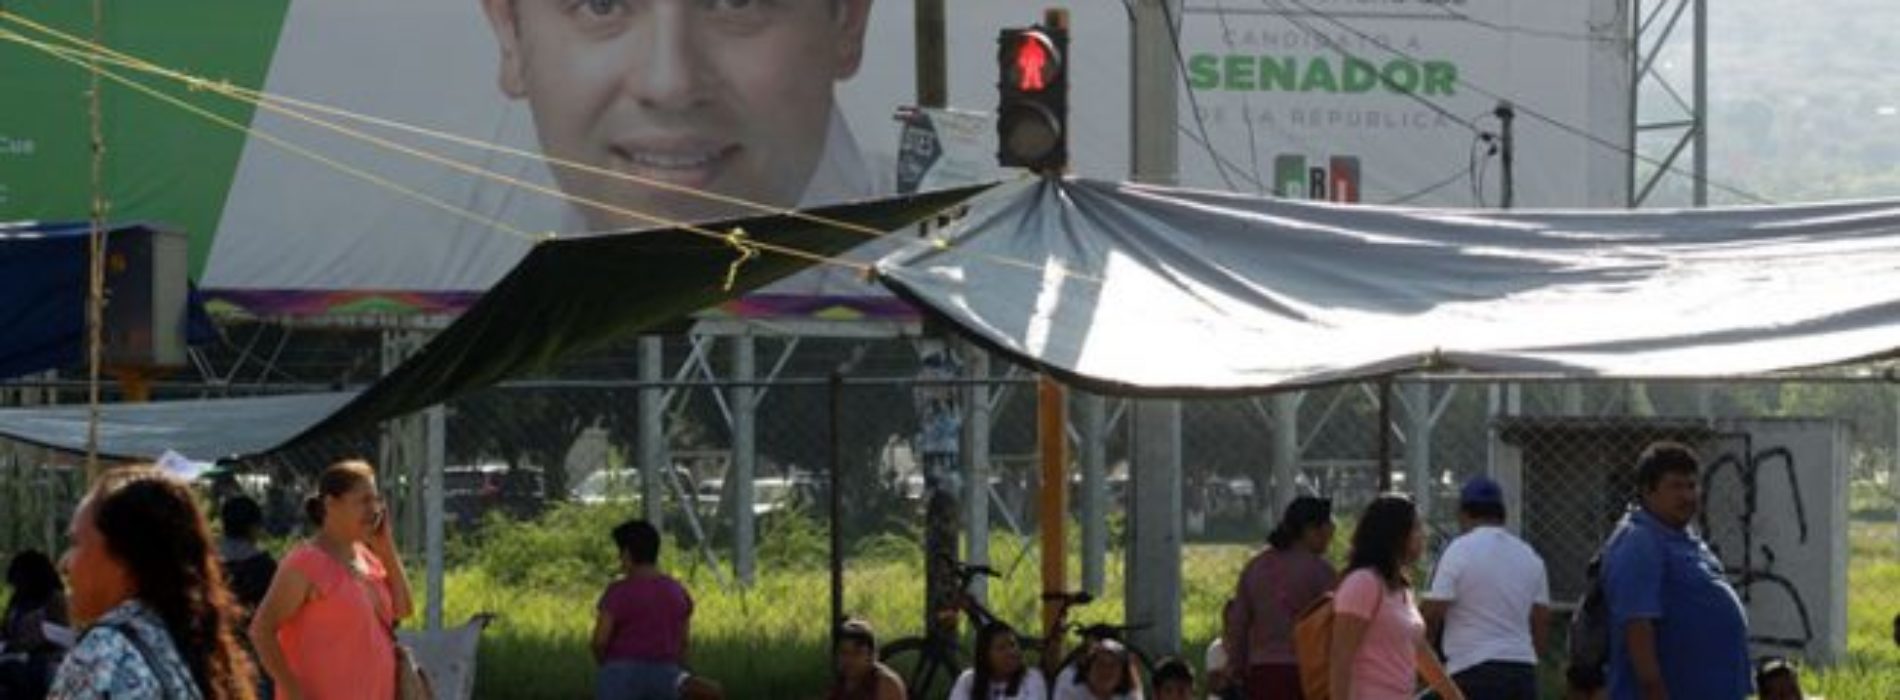 Mantiene Gobierno de Oaxaca voluntad política; convoca al
diálogo a trabajadores de la educación